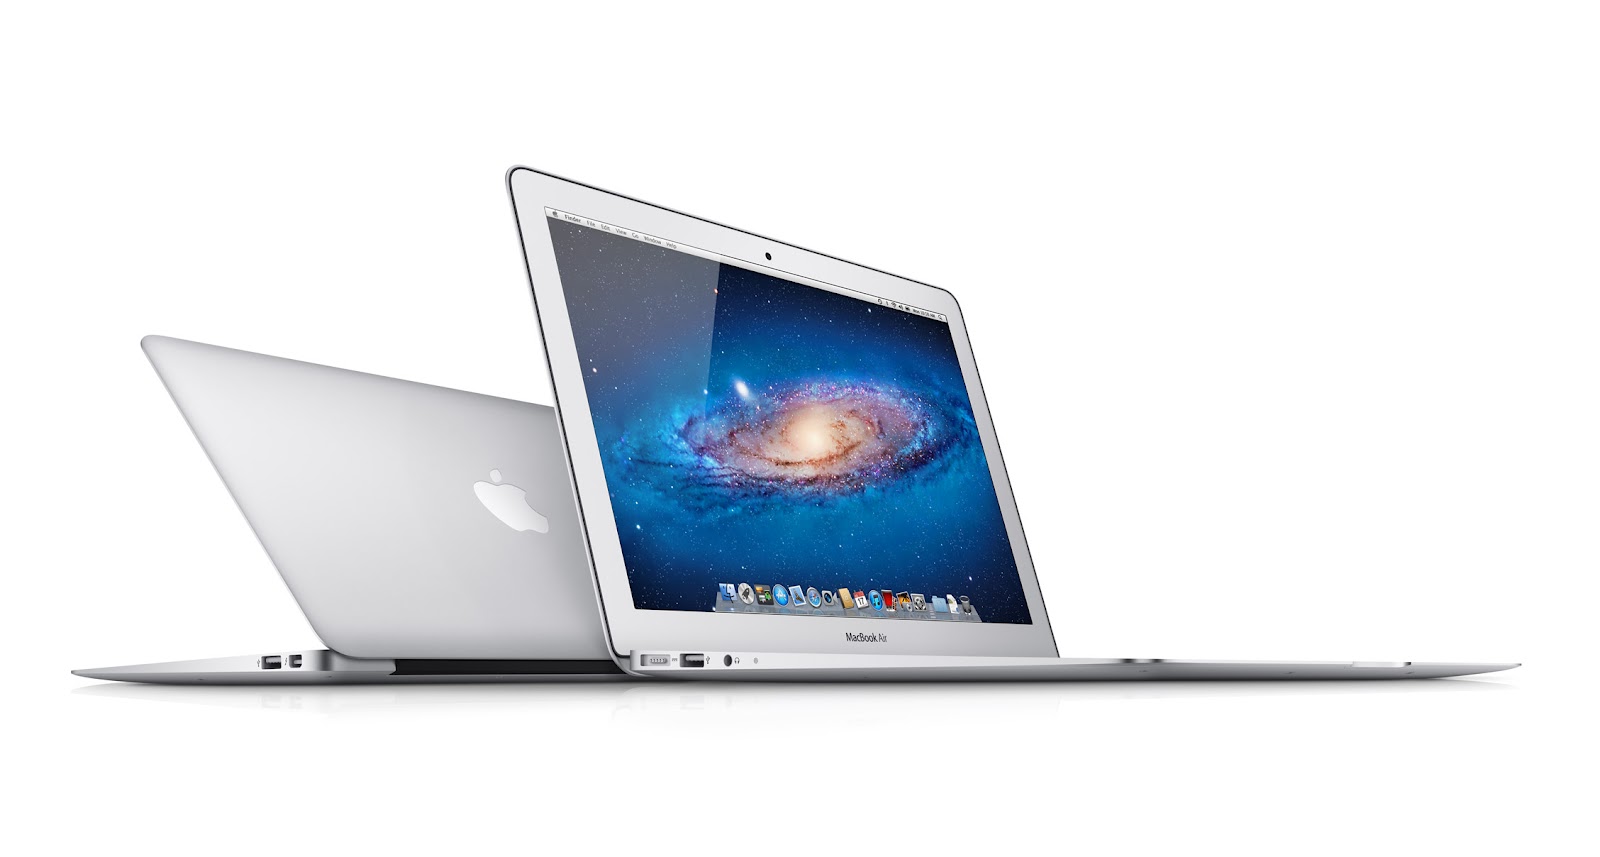 sold 13 macbook a new macbook pro 13 view macbook